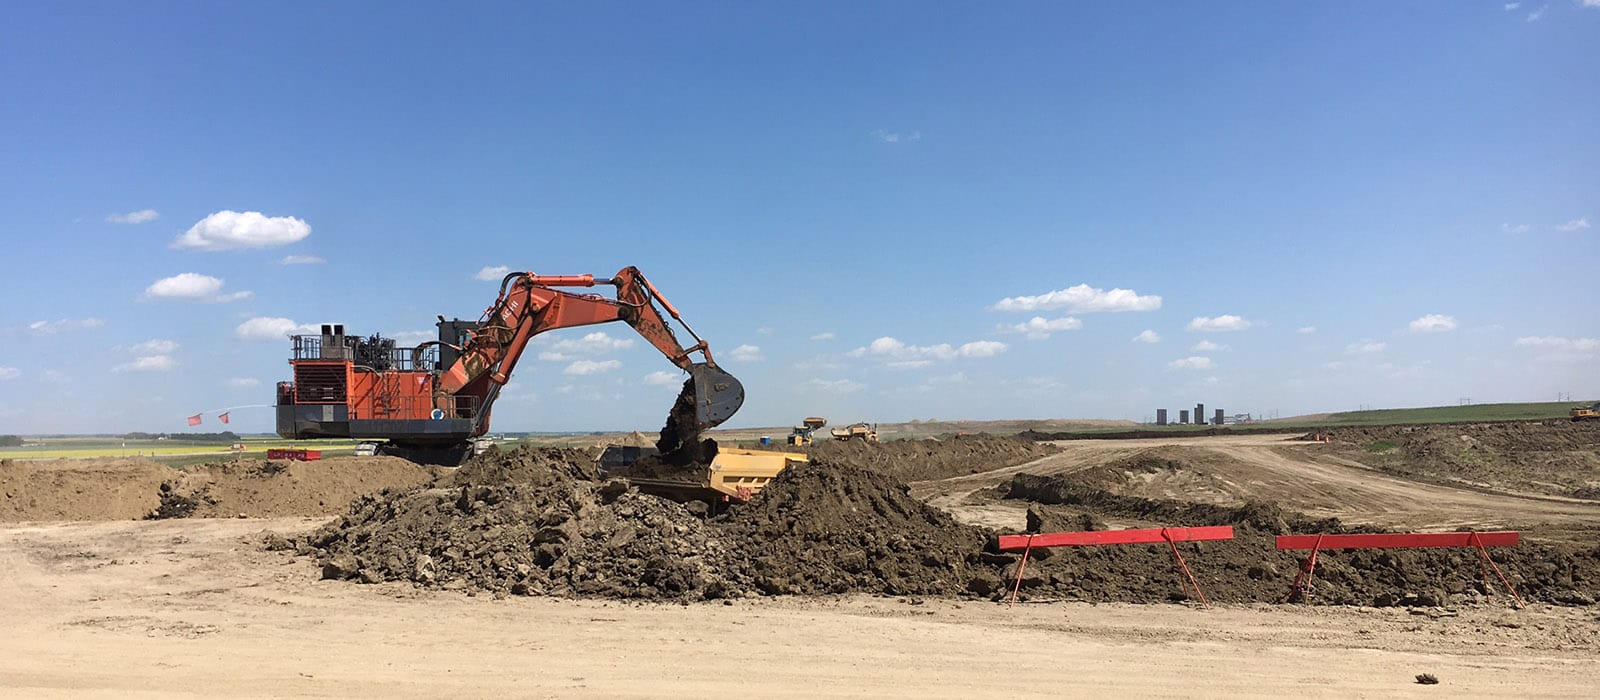 loader digging up dirt on construction site